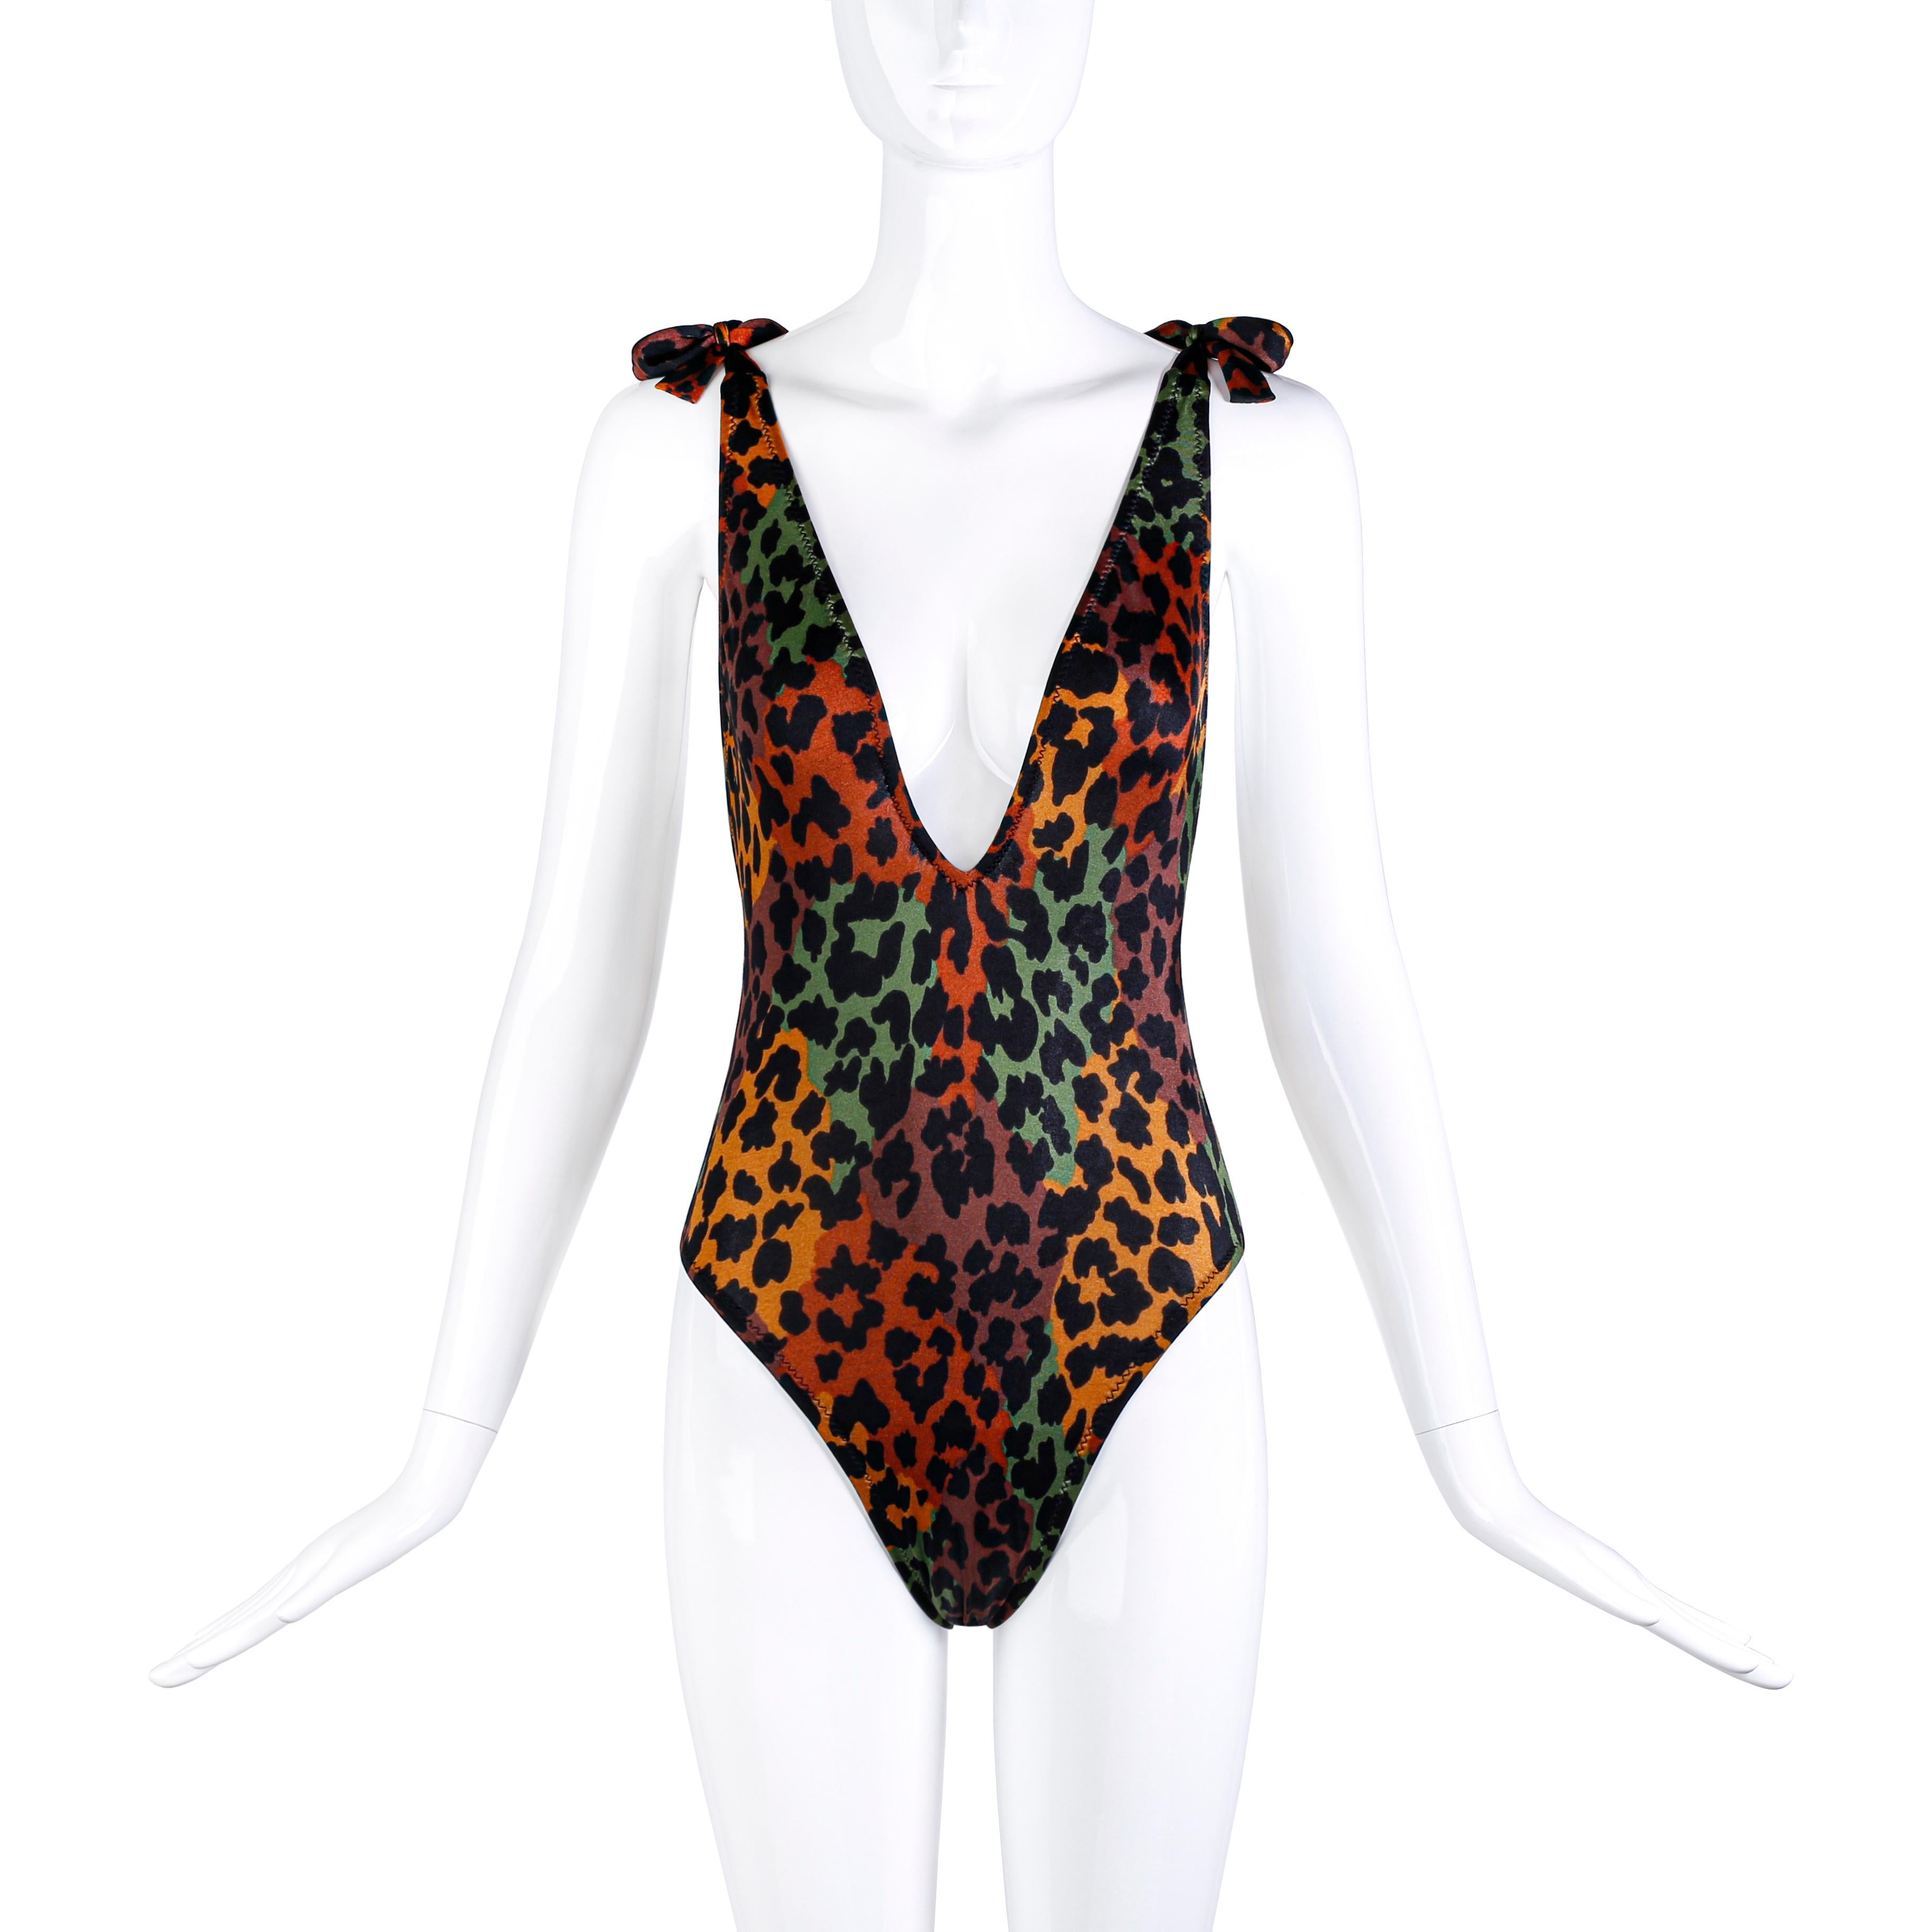 Vintage Yves Saint Laurent Badeanzug mit Leopardenmuster und Stretch-Body. Ungefähr 1980er Jahre. Auf dem Label steht 